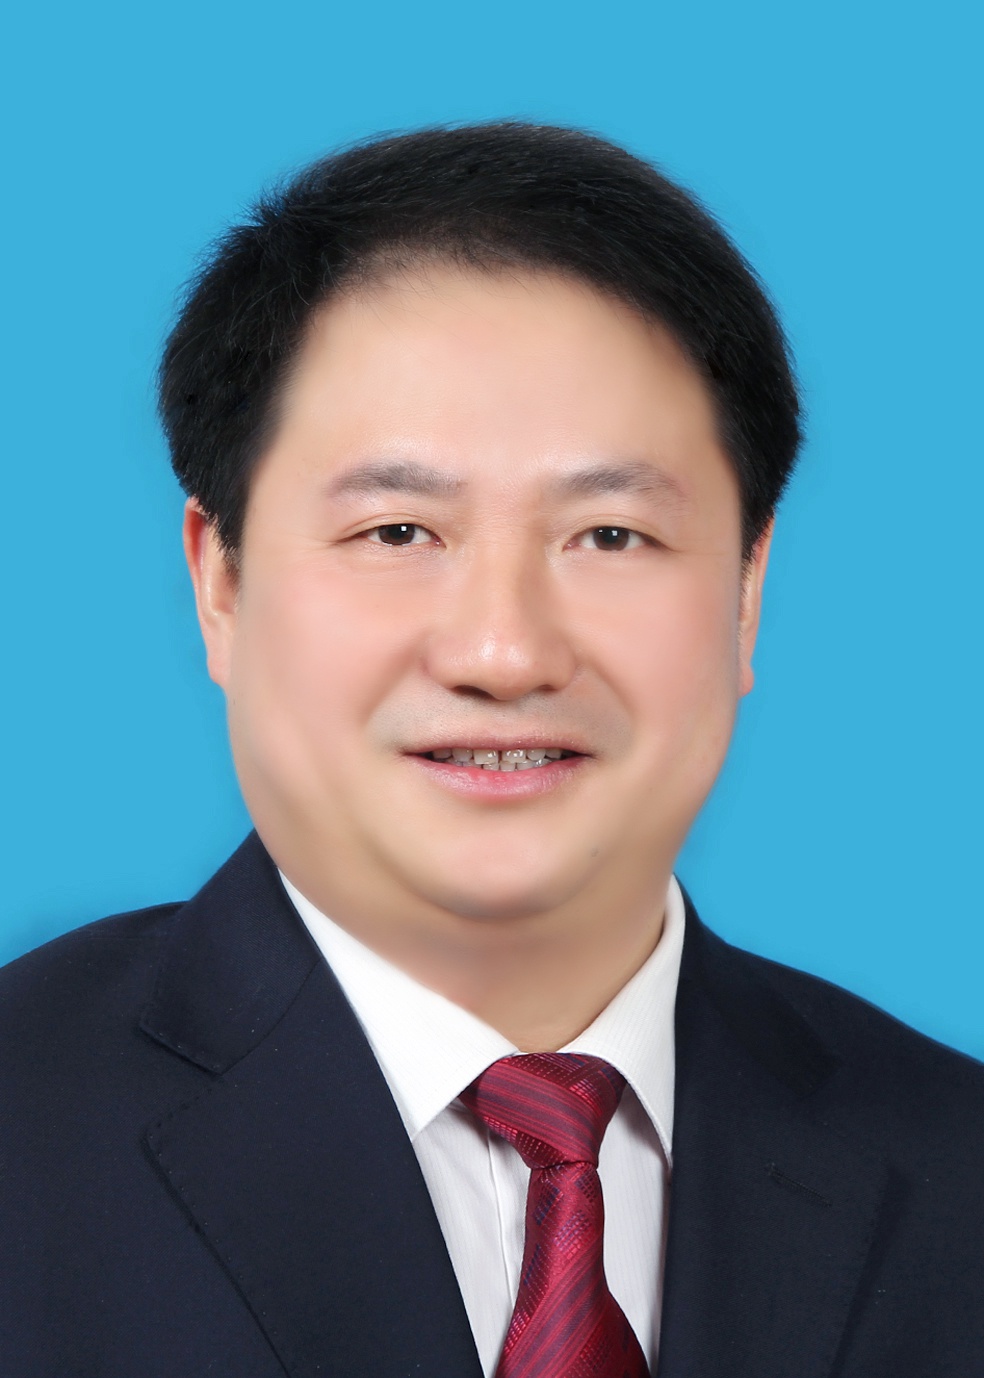 徐州市委常委、宣传部长徐东海